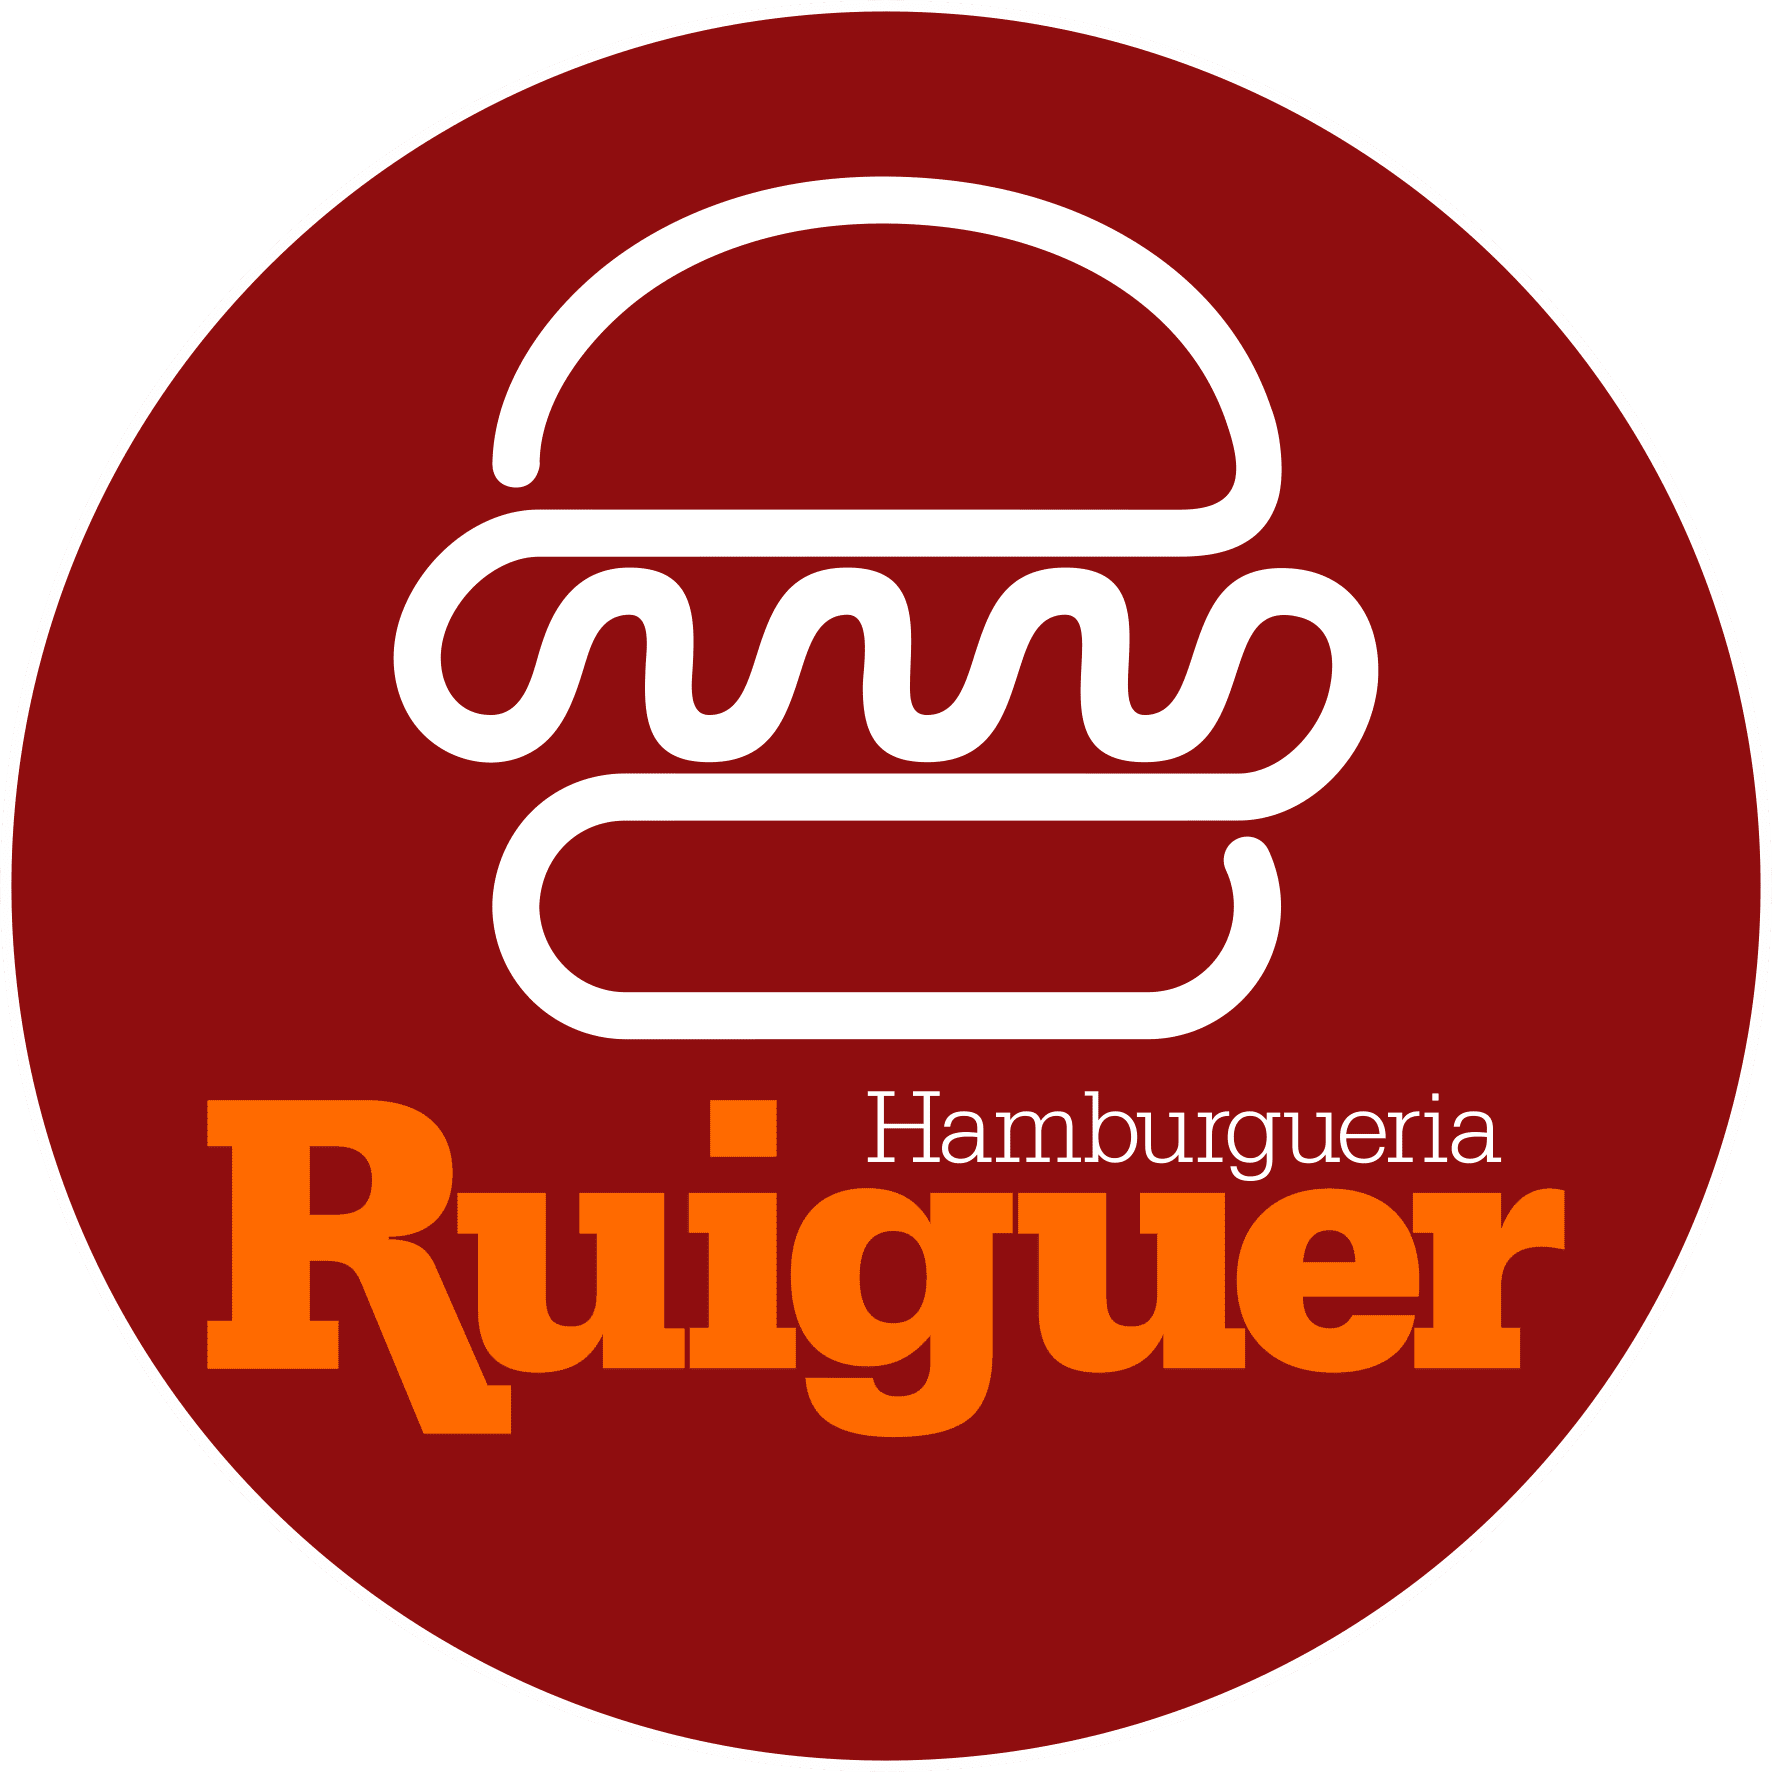 Ruiguer Hamburgueria